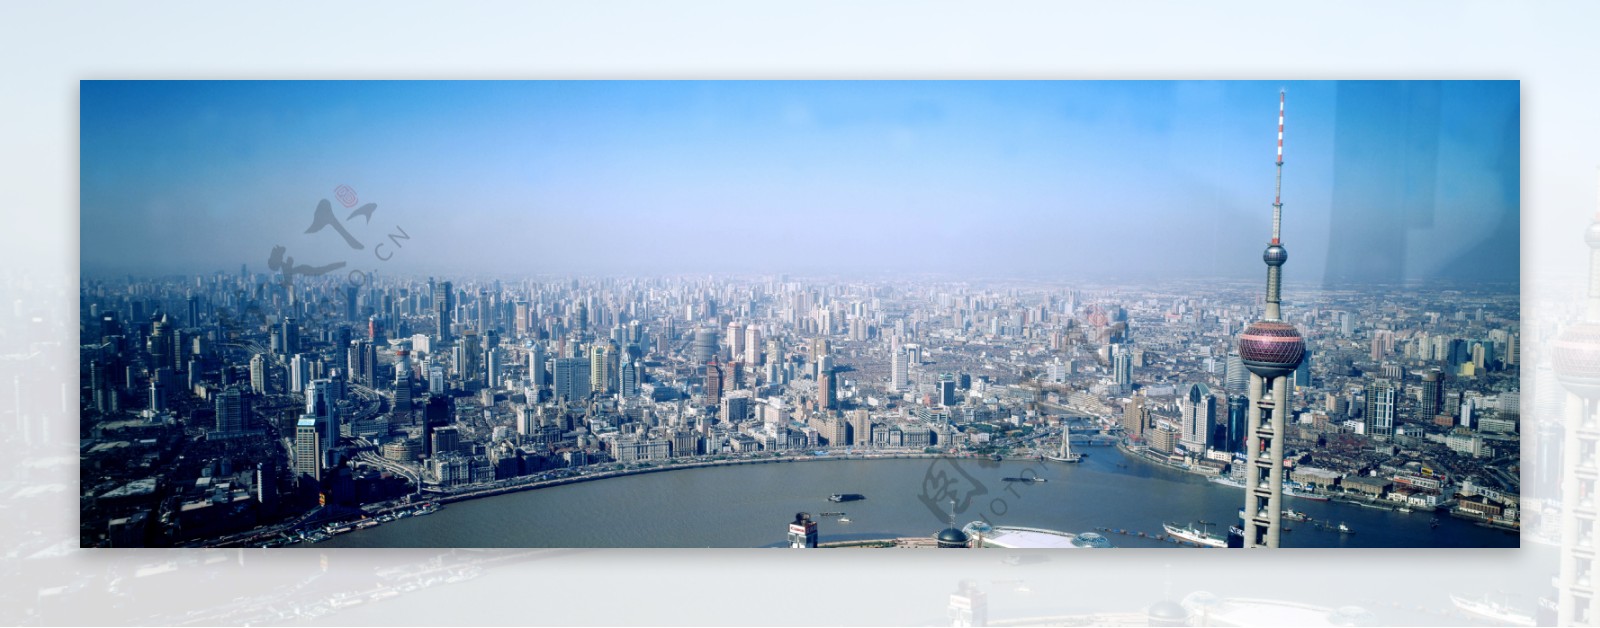 上海外滩东方明珠全景鸟瞰宽幅图图片